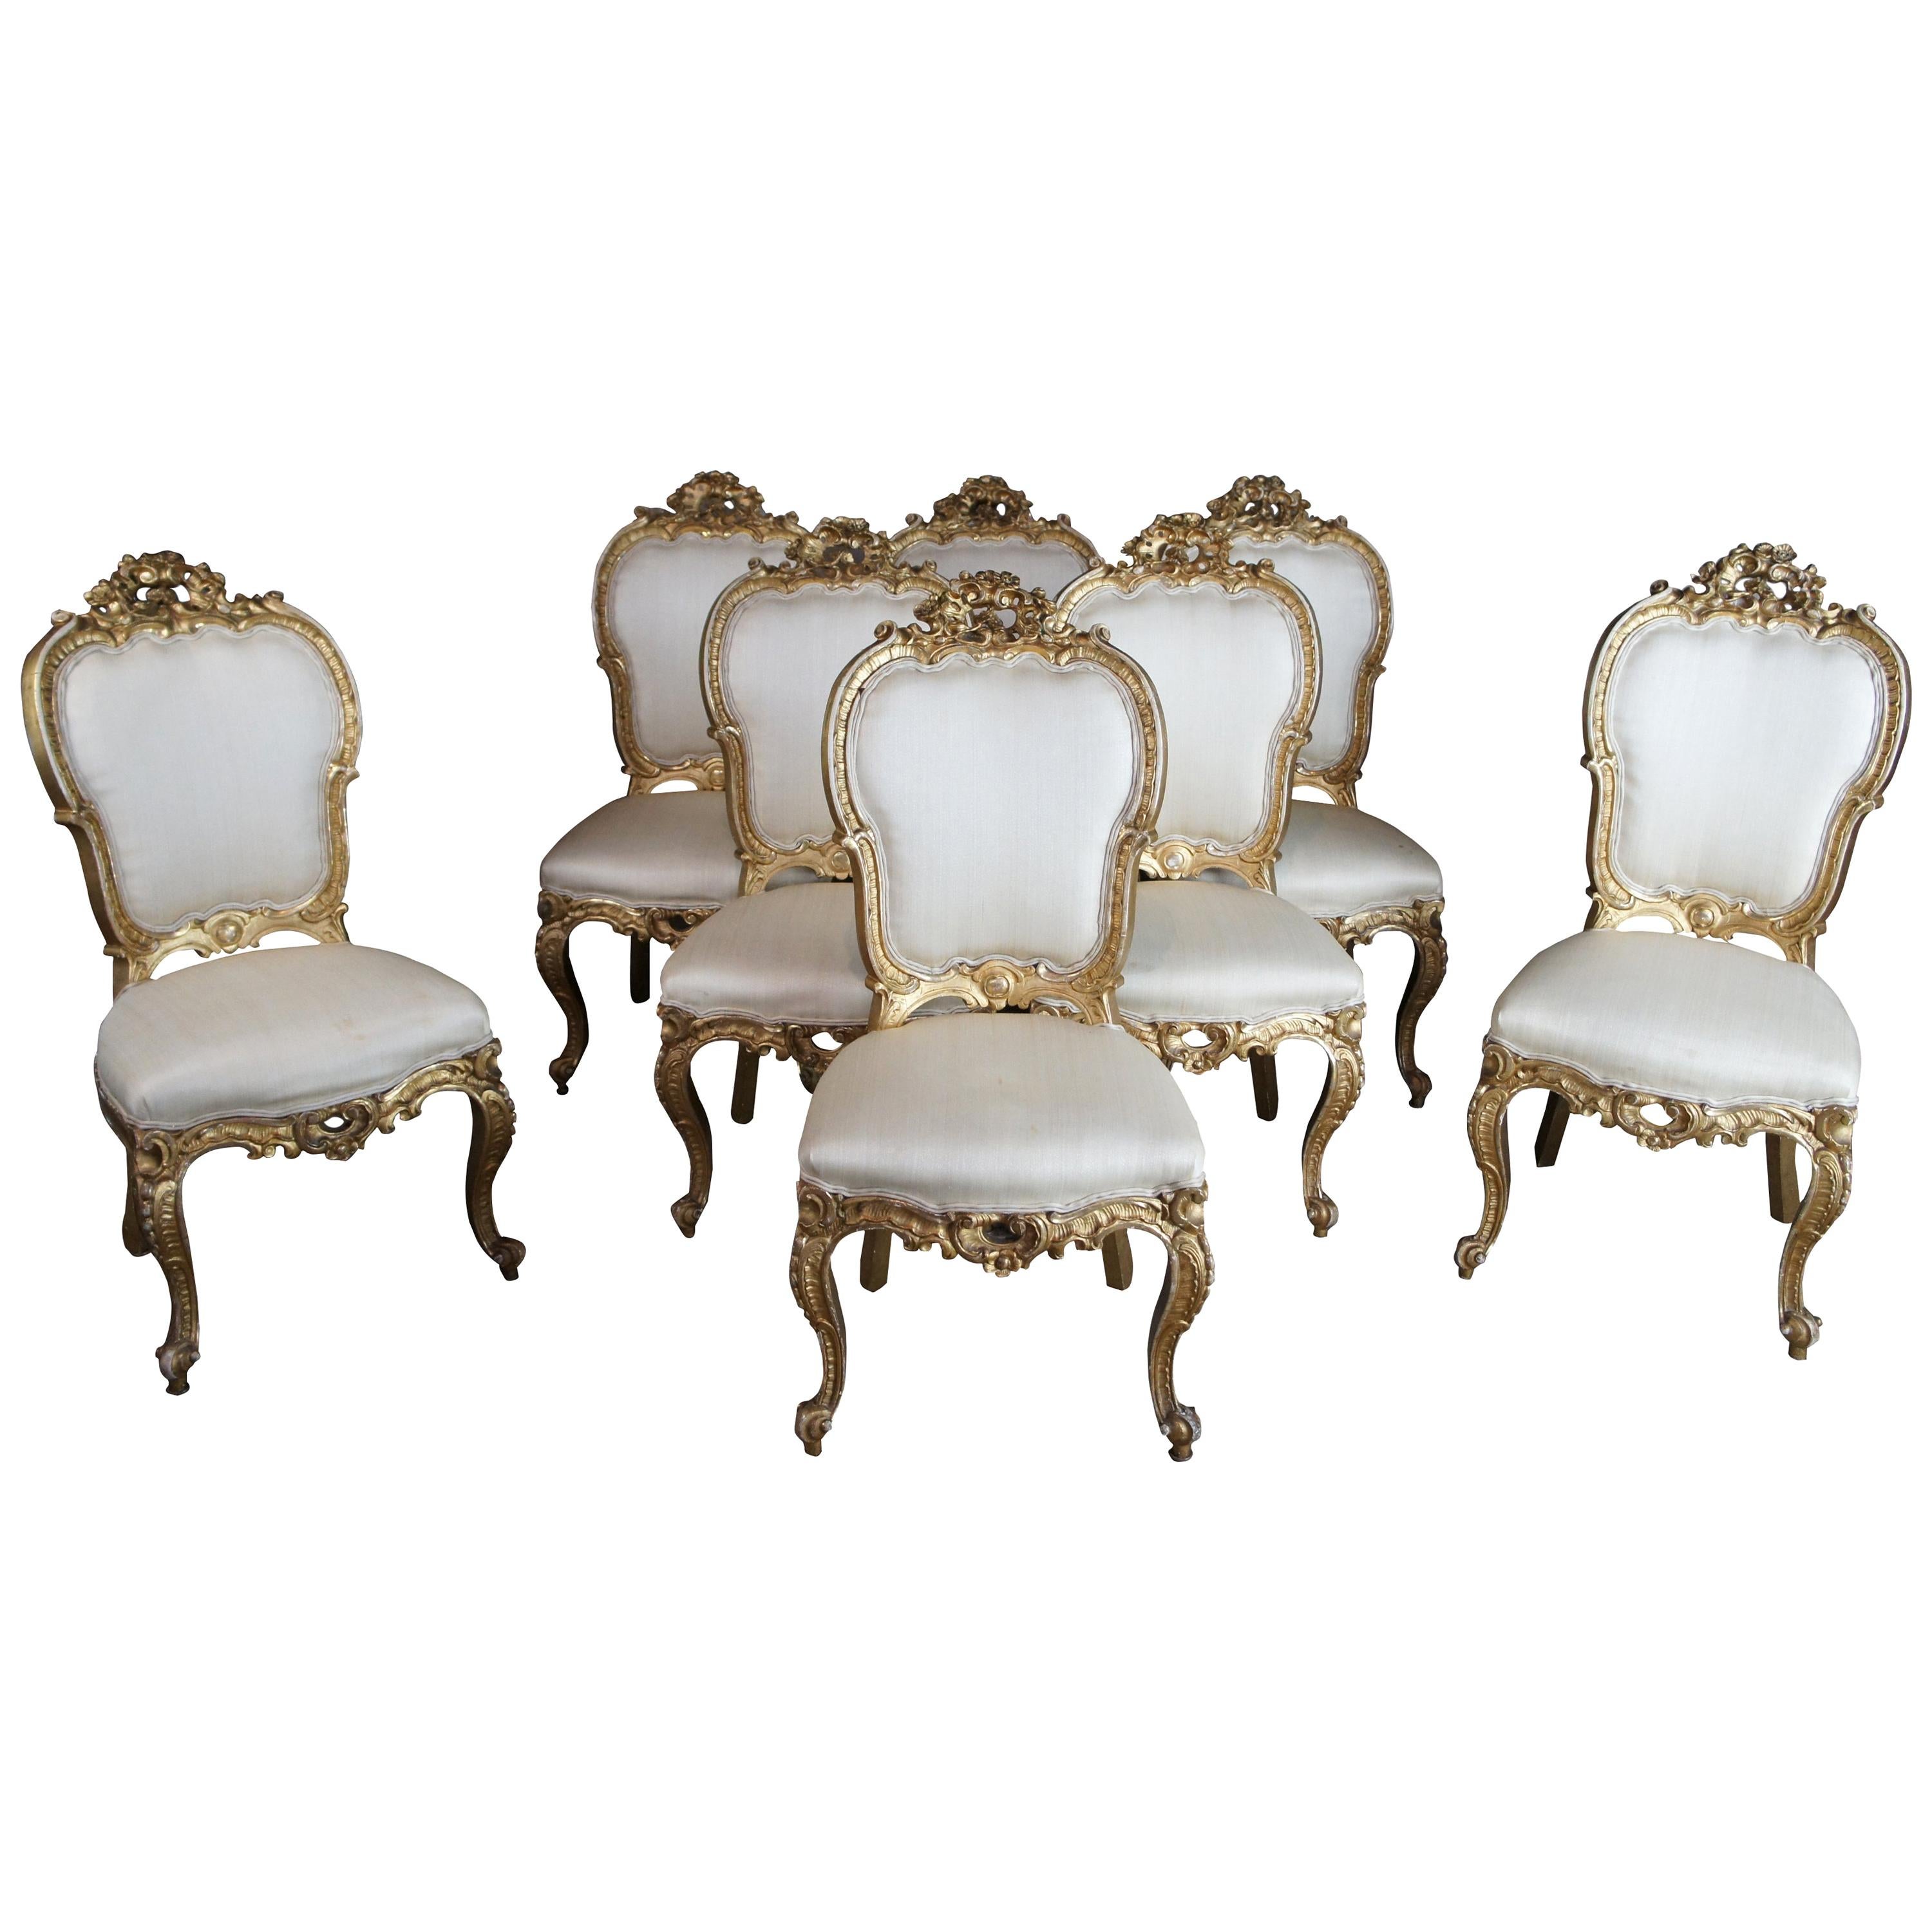 8 chaises de salle à manger suédoises anciennes baroques du 18ème siècle, style Louis XV rococo et dorées